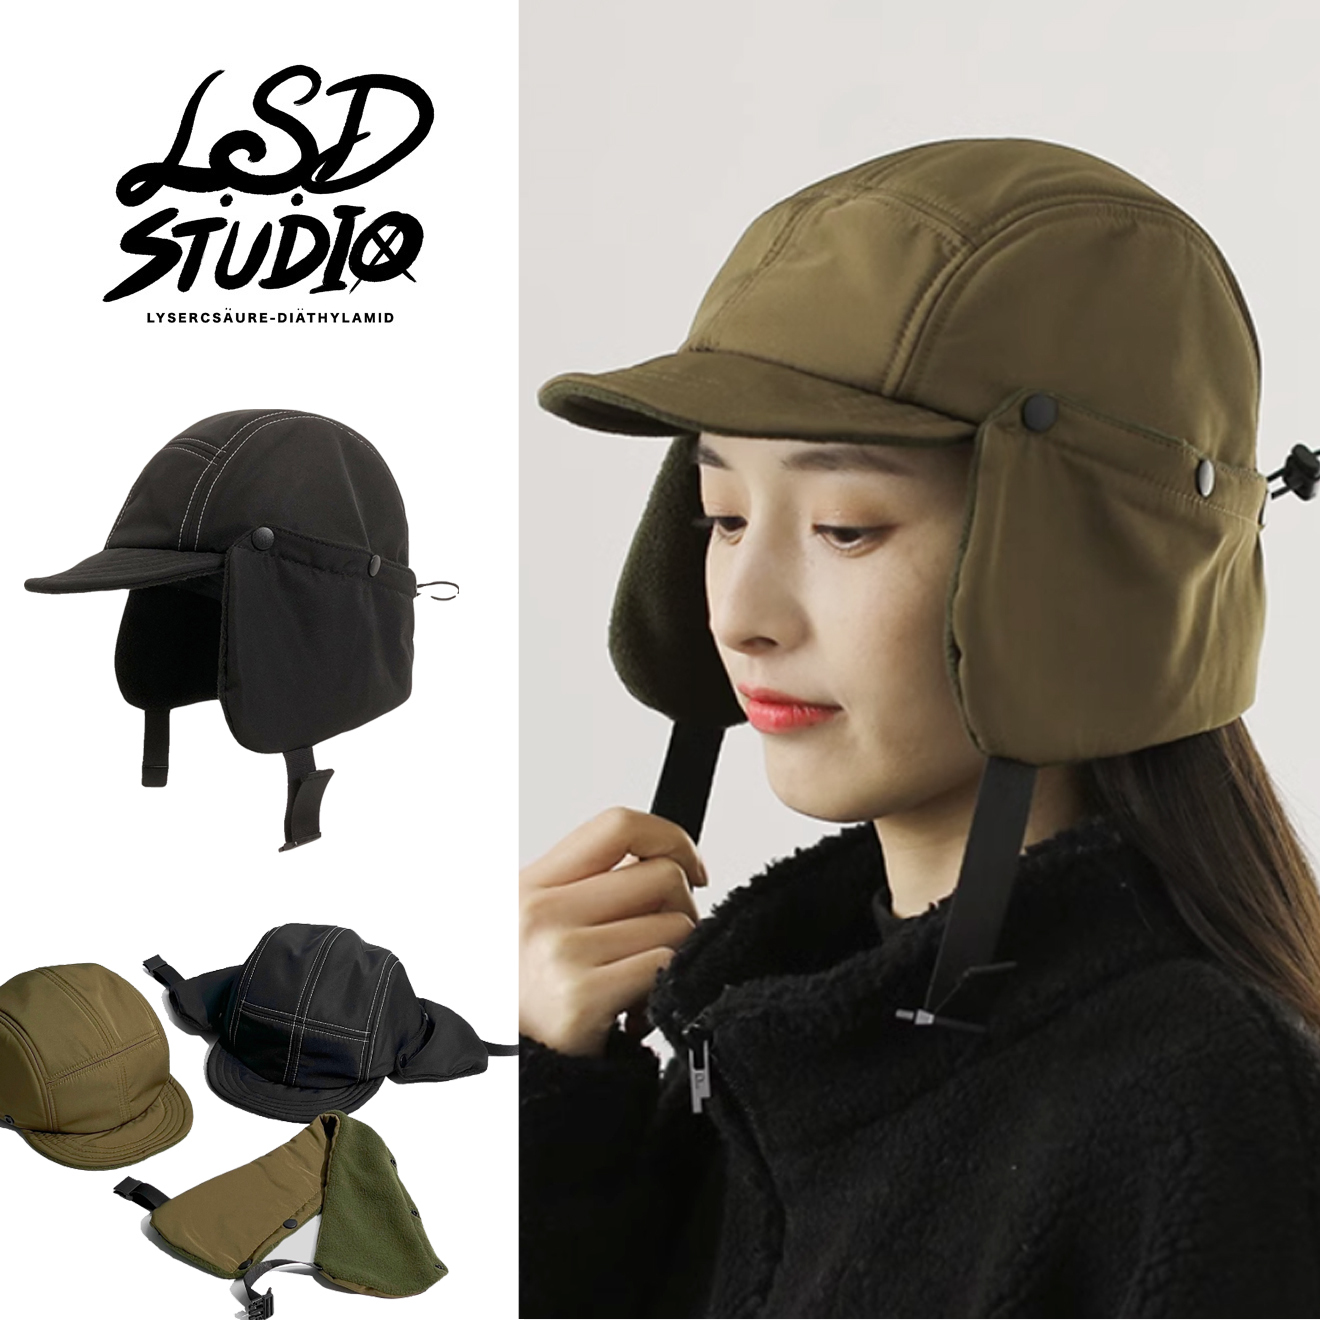 飛行帽|衝鋒帽|護耳帽|帽|保暖帽|滑雪帽|遮耳帽|蓋耳帽|帽子